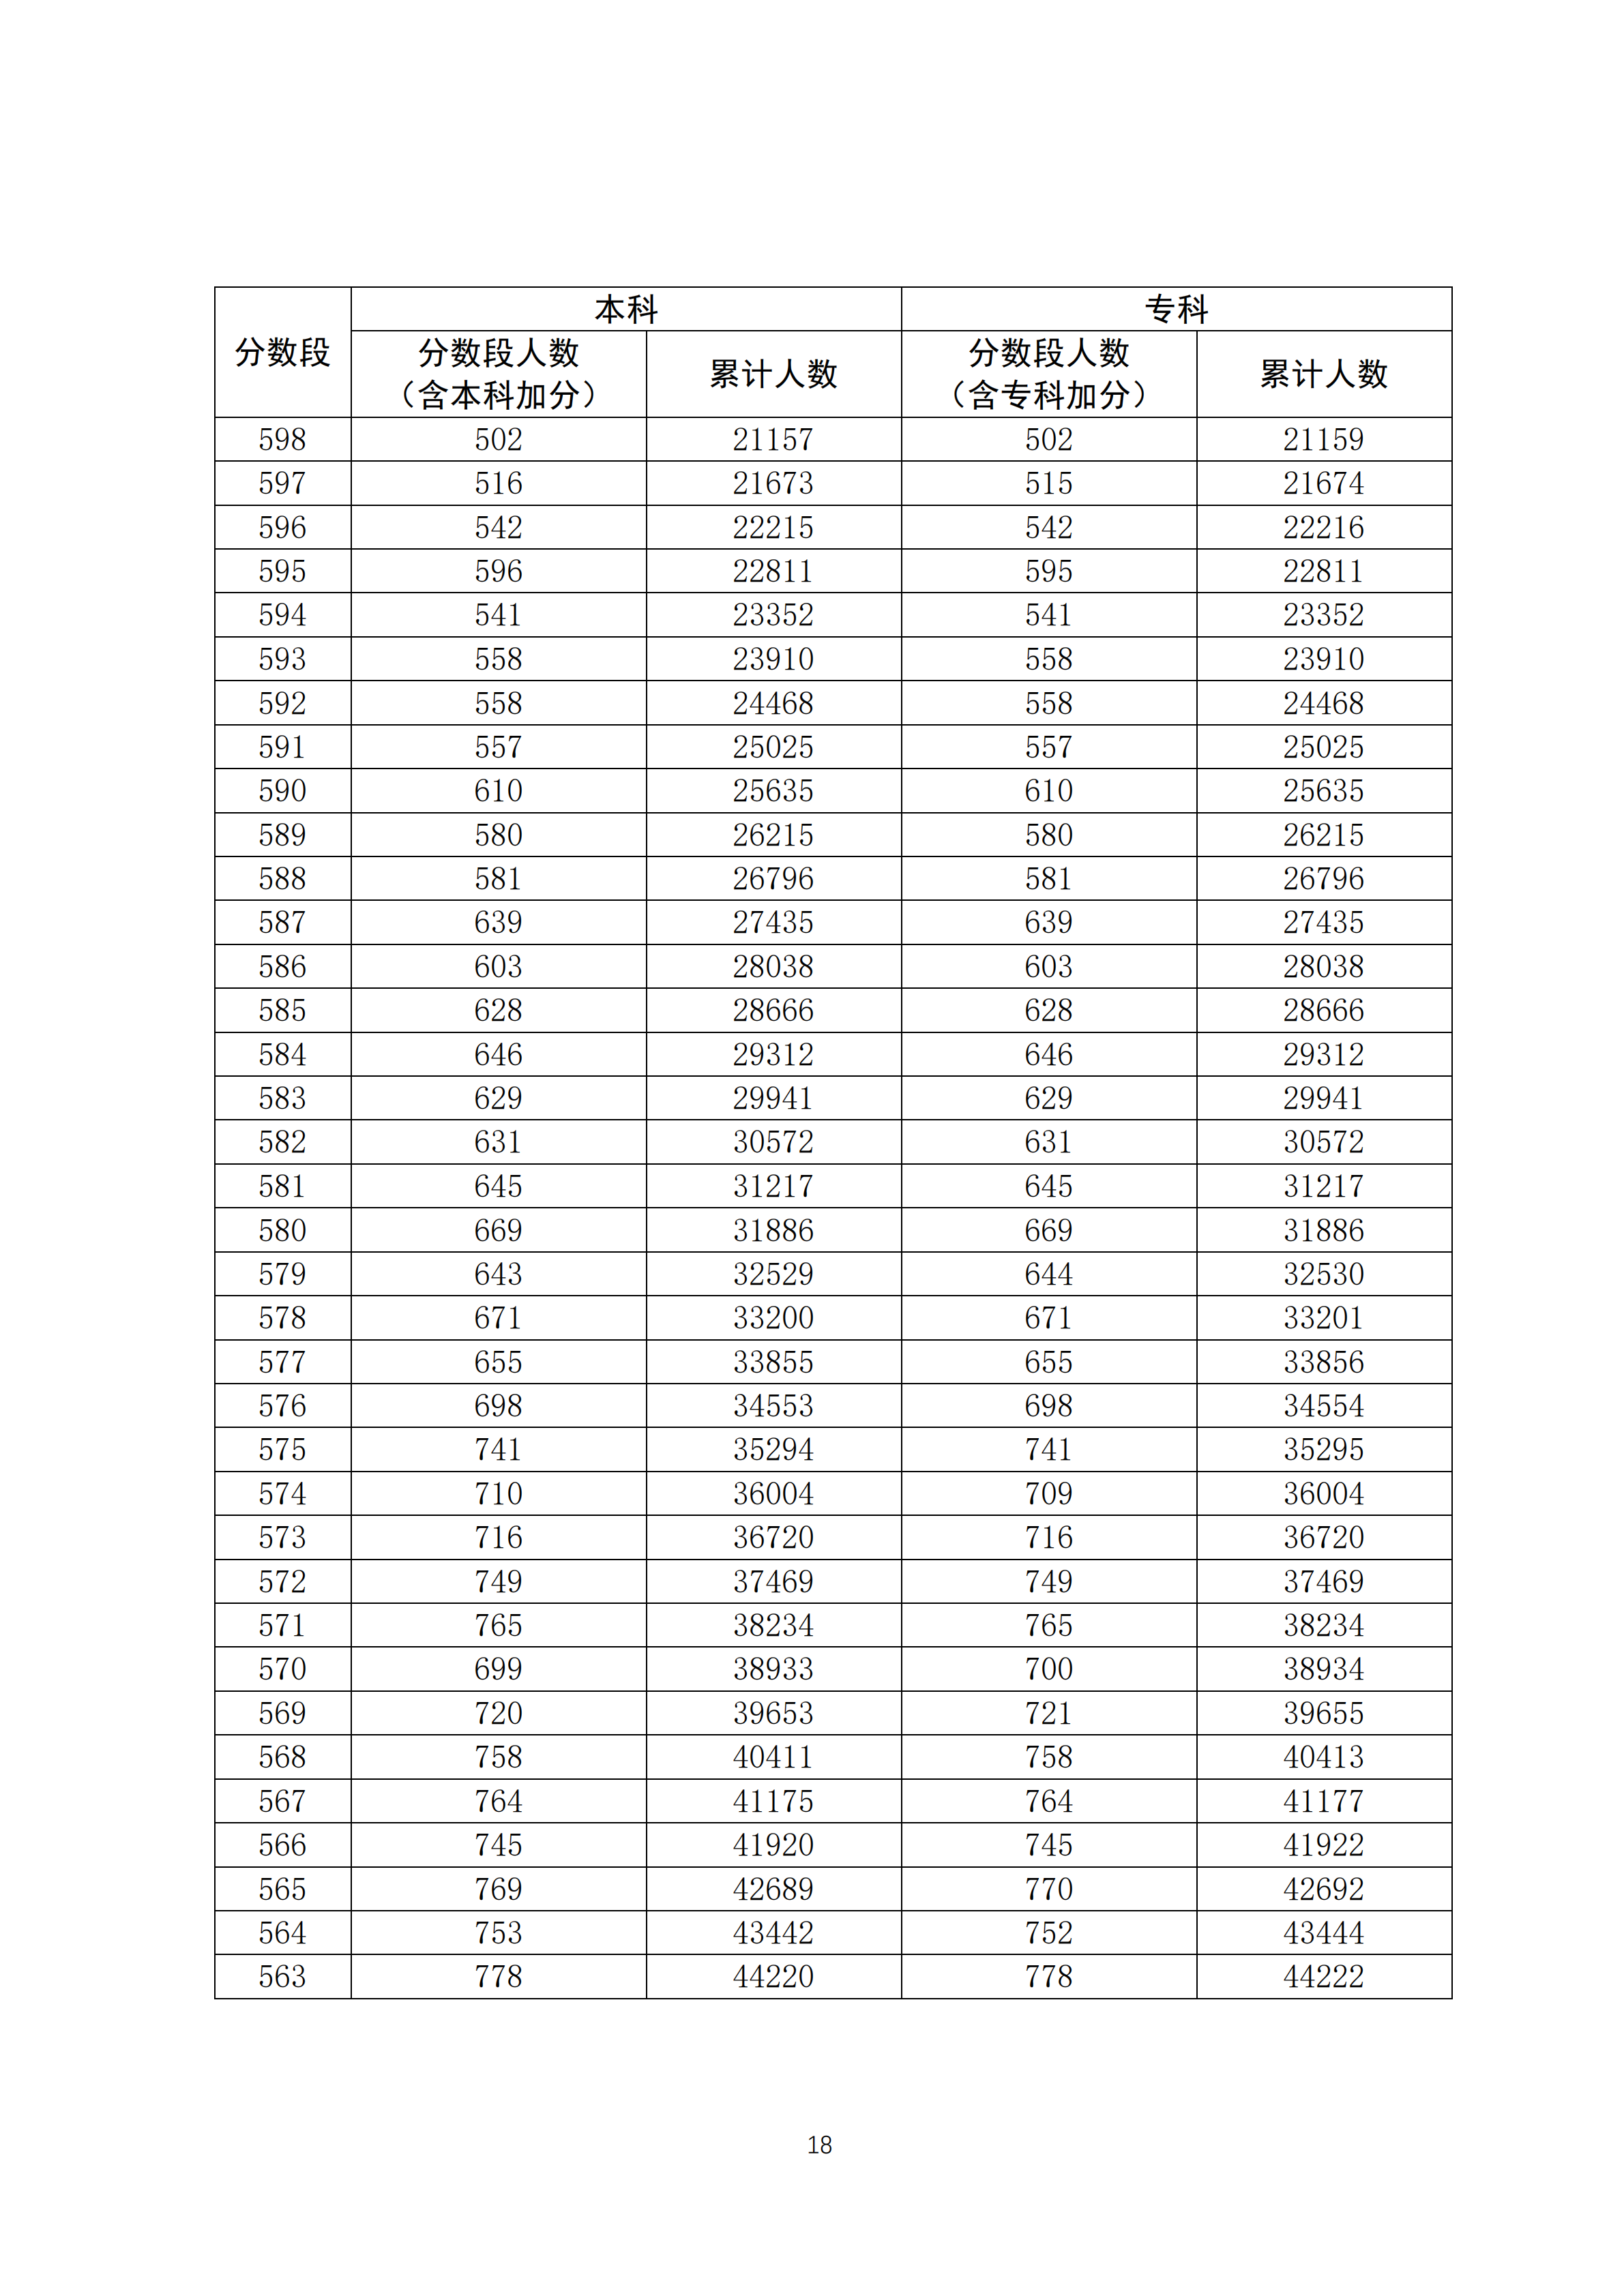 2020广东高考理科一分一段表 最新高考成绩排名